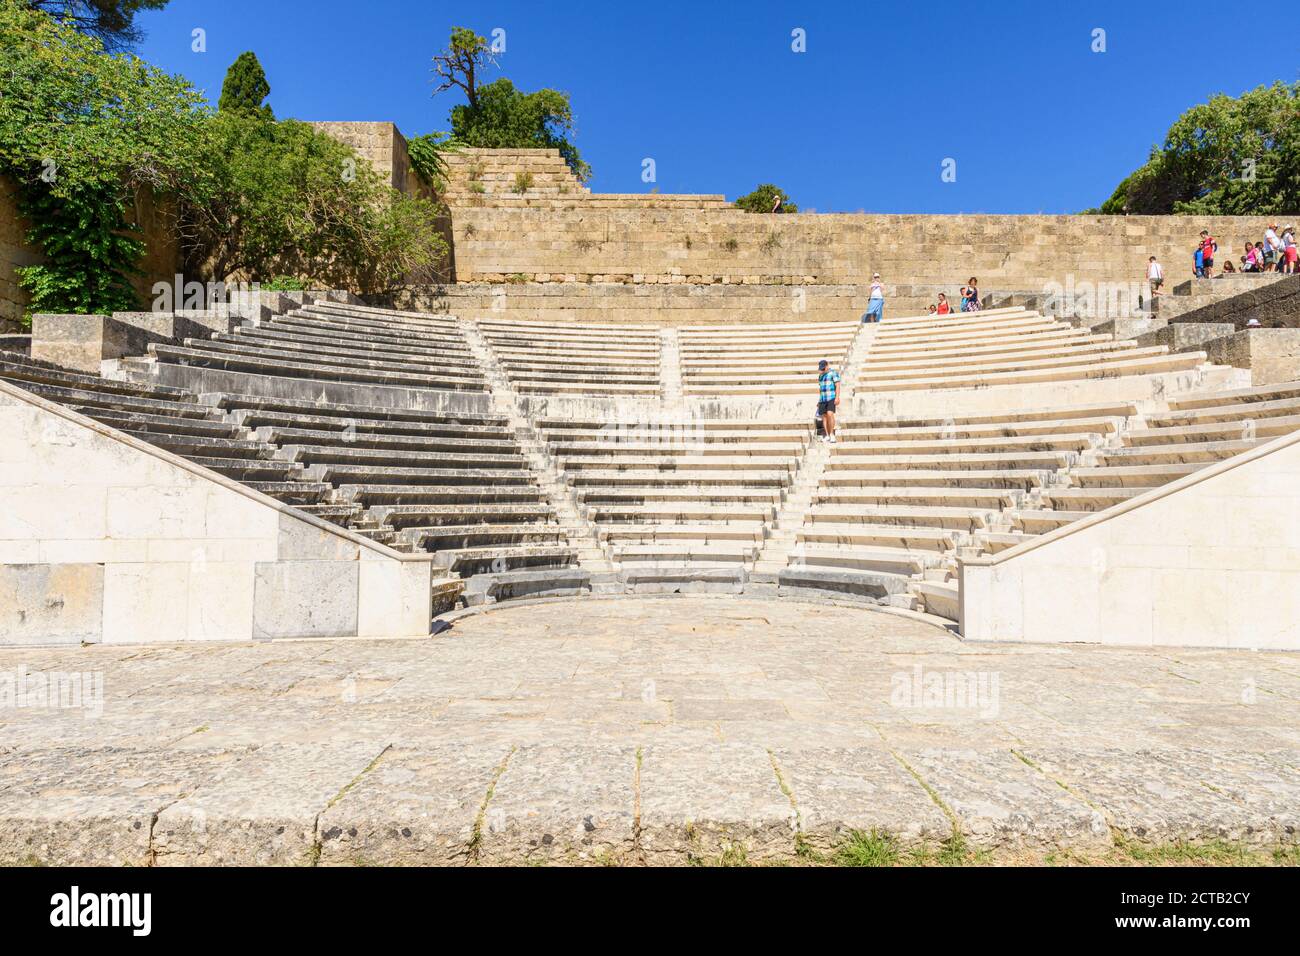 Renoviertes antikes Theater unter den hellenistischen Ruinen auf dem Monte Smith, Rhodos Stadt, Rhodos Insel, Dodekanes, Griechenland Stockfoto